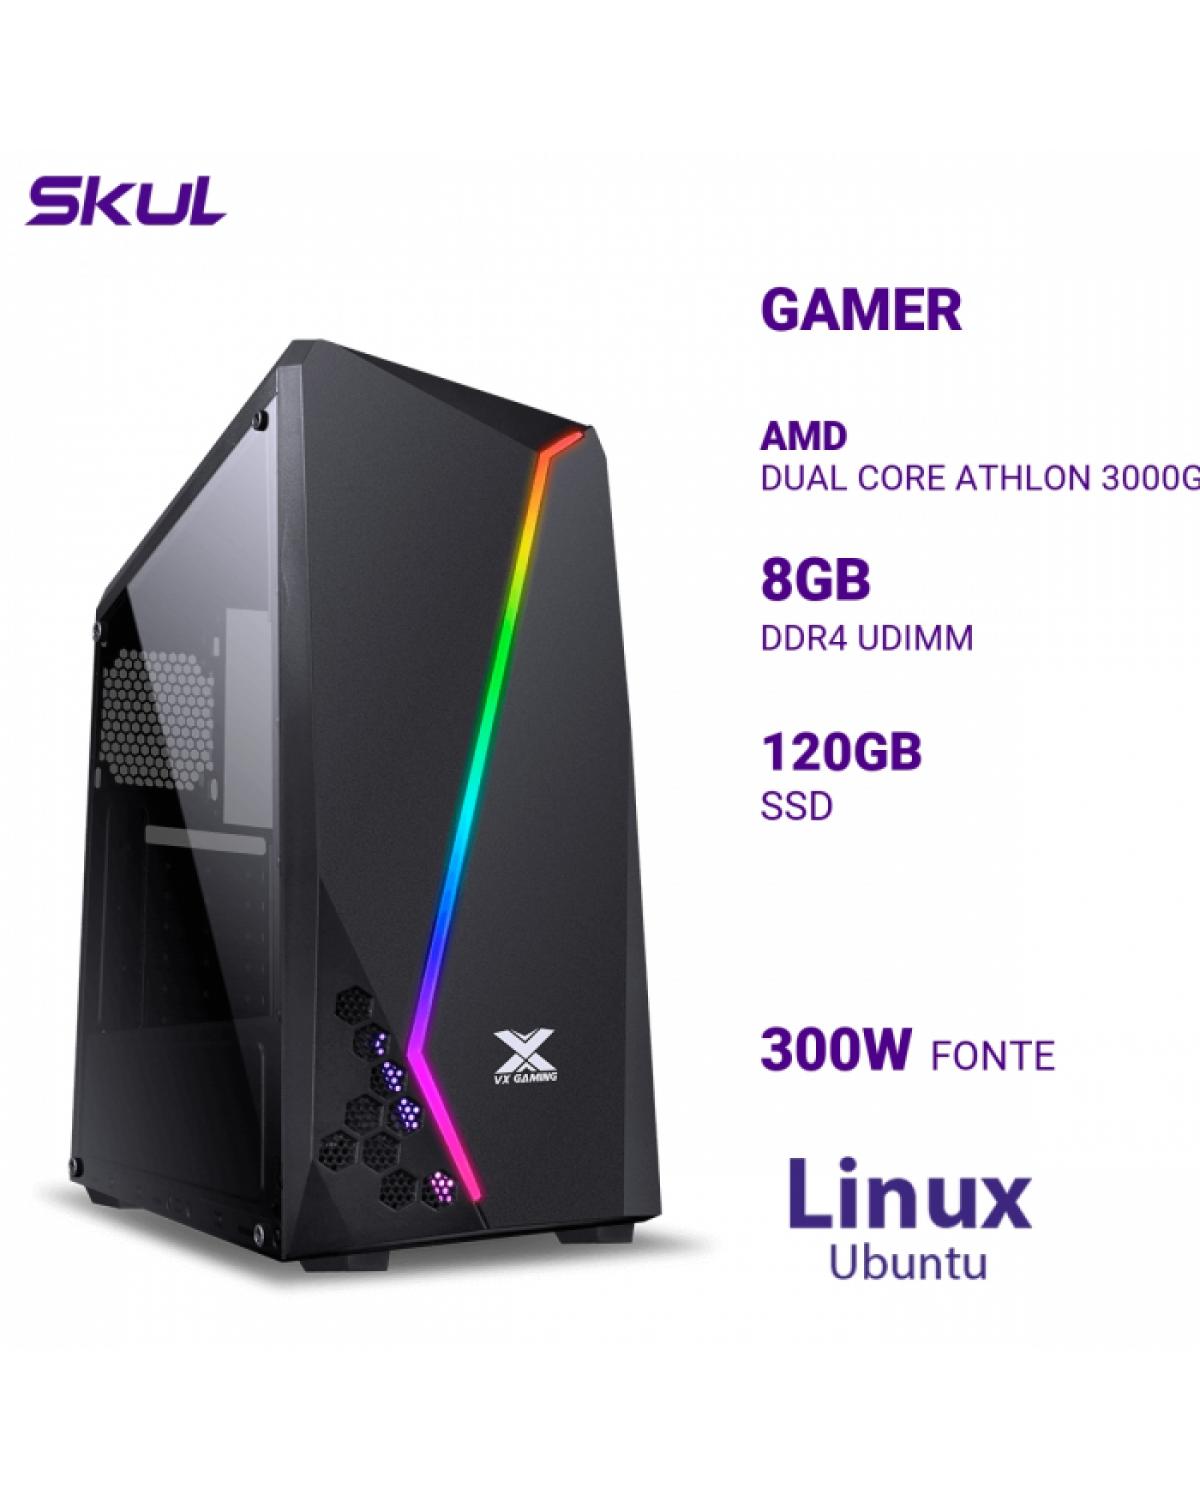 COMPUTADOR GAMER 1000 DUAL CORE ATHLON 3000G 3.50GHZ MEM 8GB DDR4 SSD 120GB FONTE 300W LINUX